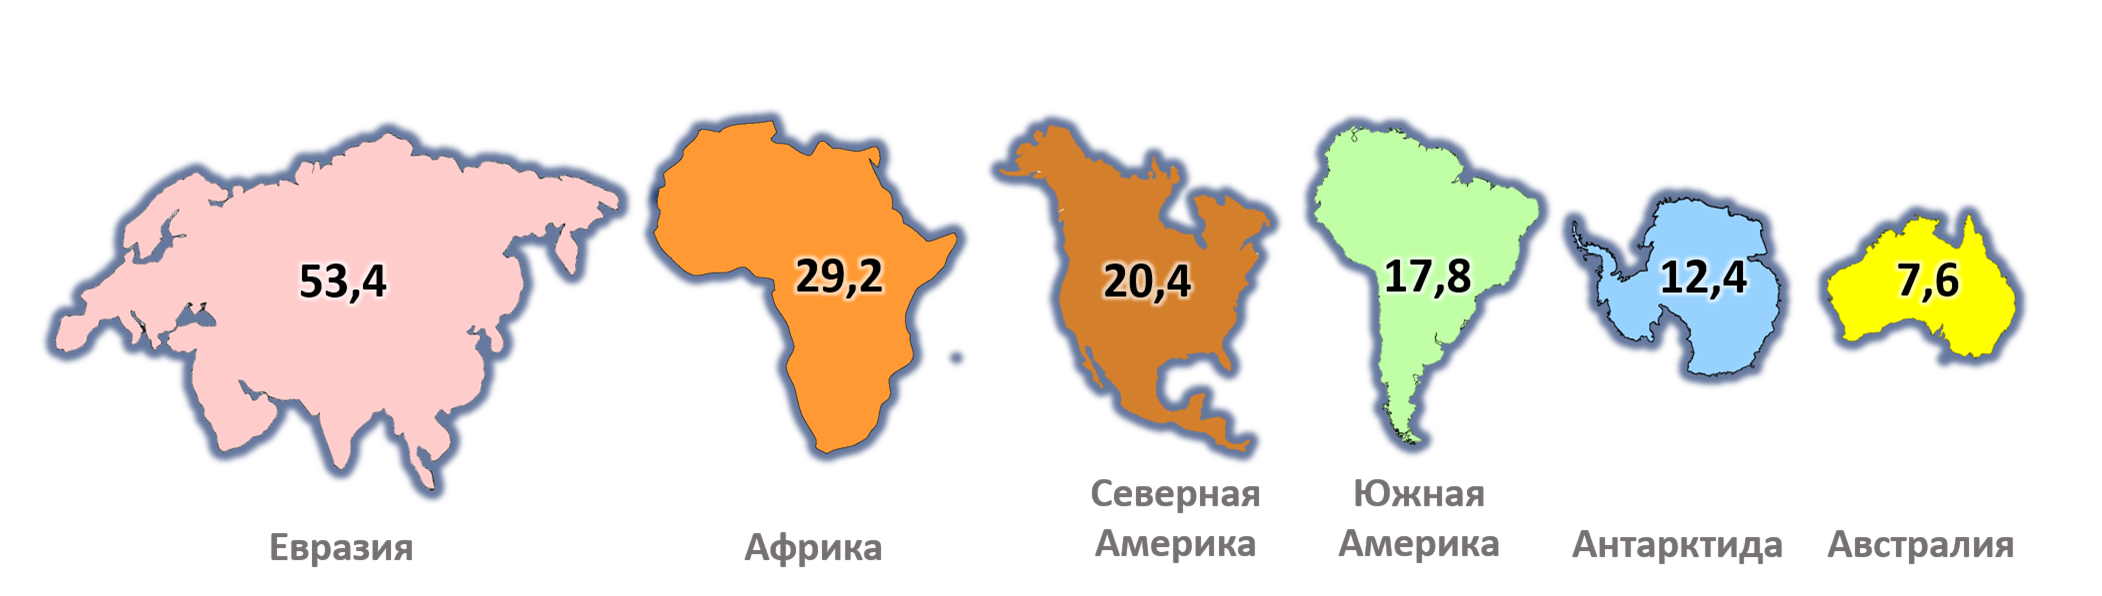 Впр 7 класс география южные материки. Евразия Африка Северная Америка Южная Америка Австралия Антарктида. Сравнение размеров материков на карте. Размеры материков по площади.